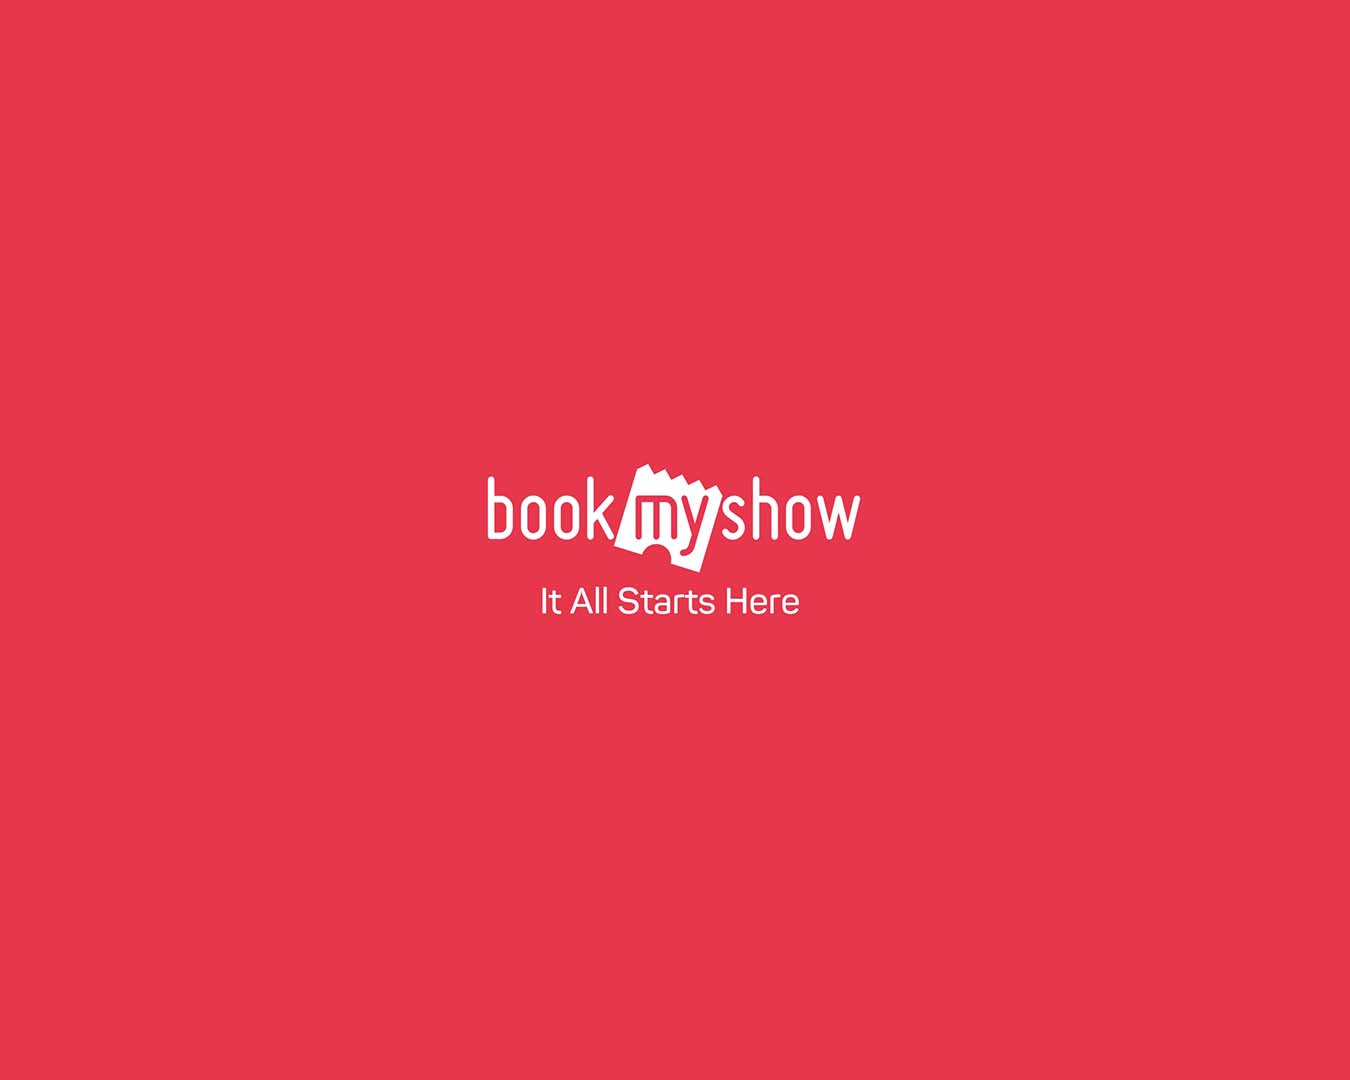 Top Trending & Popular Indian Actors & Actresses of 2020 Films - BookMyShow